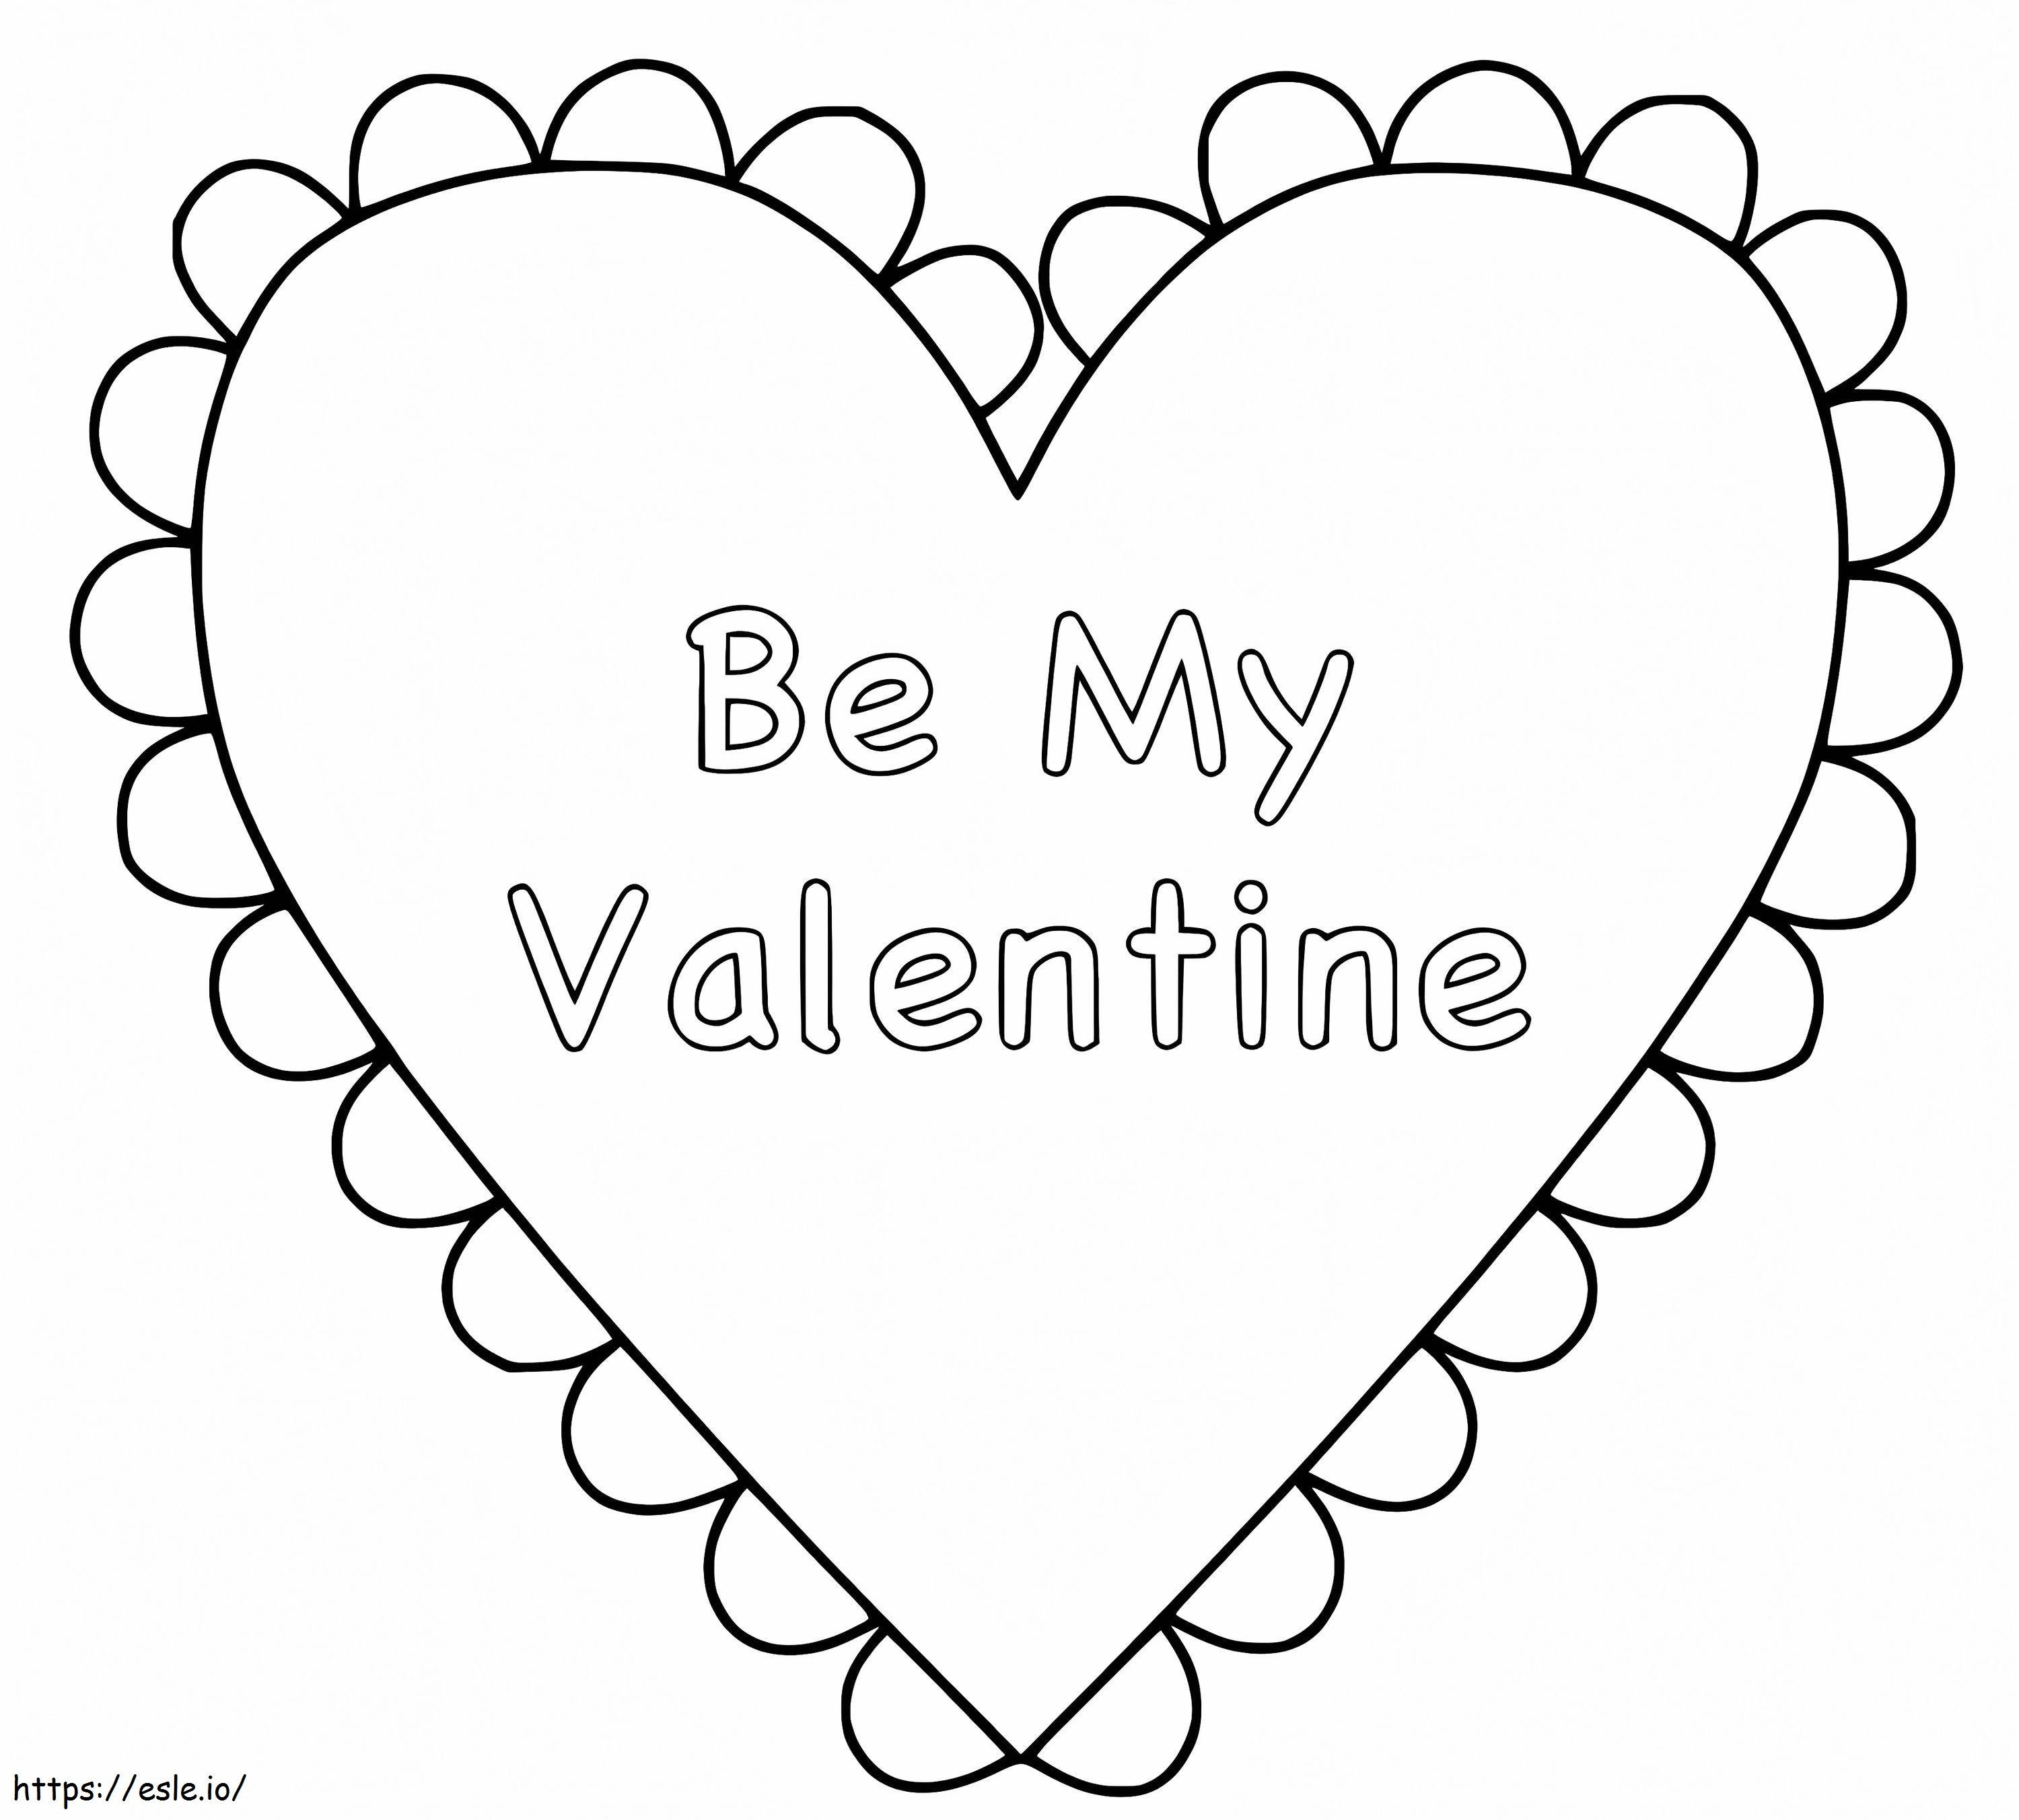 Sé mi San Valentín para imprimir gratis para colorear